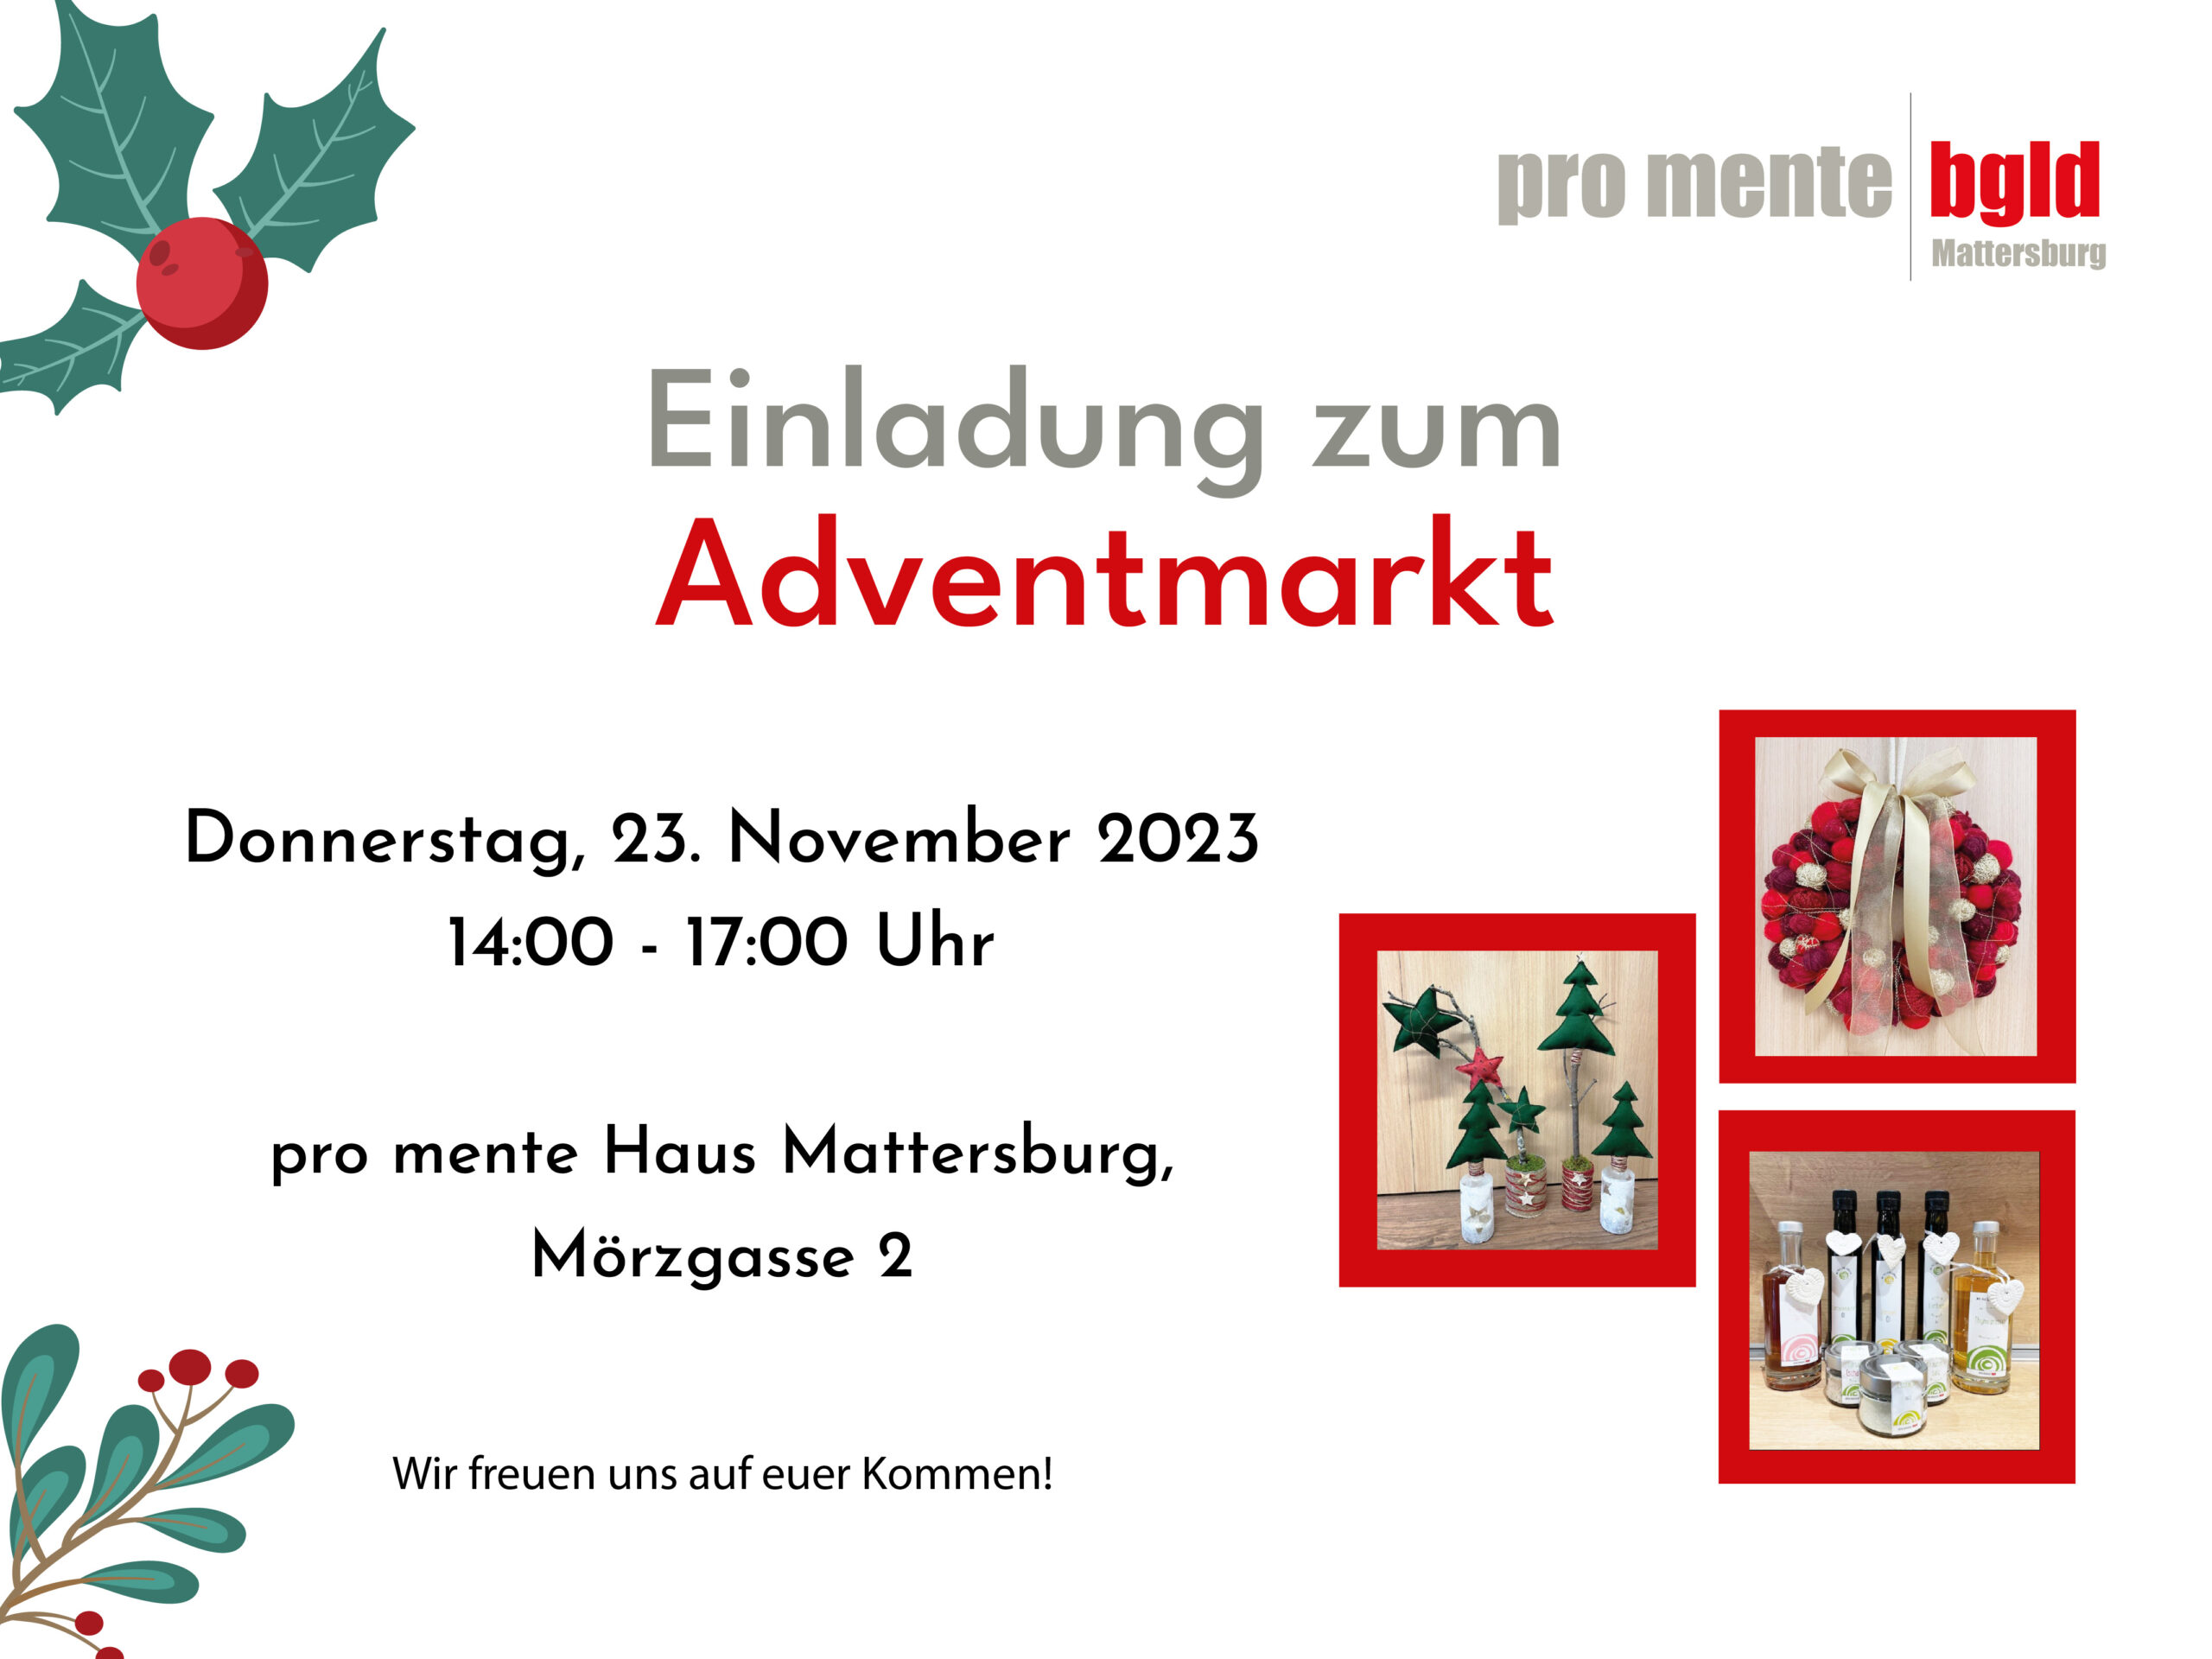 Einladung für den Adventmarkt in Mattersburg